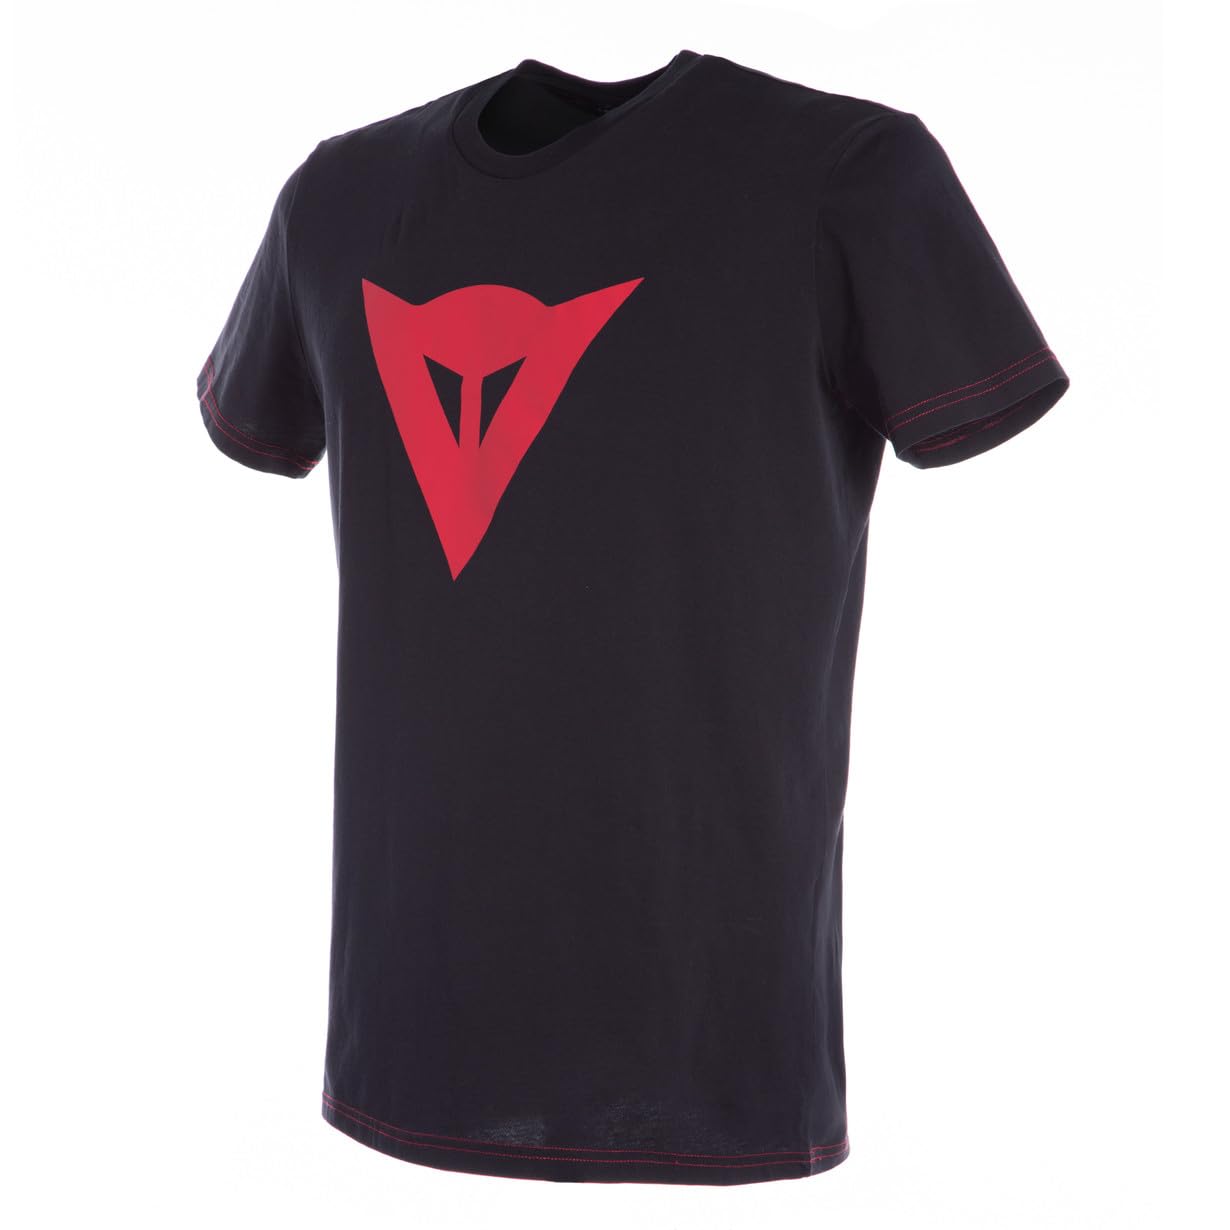 Dainese Herren Speed Demon T-shirt, Schwarz/Rot, M EU von Dainese